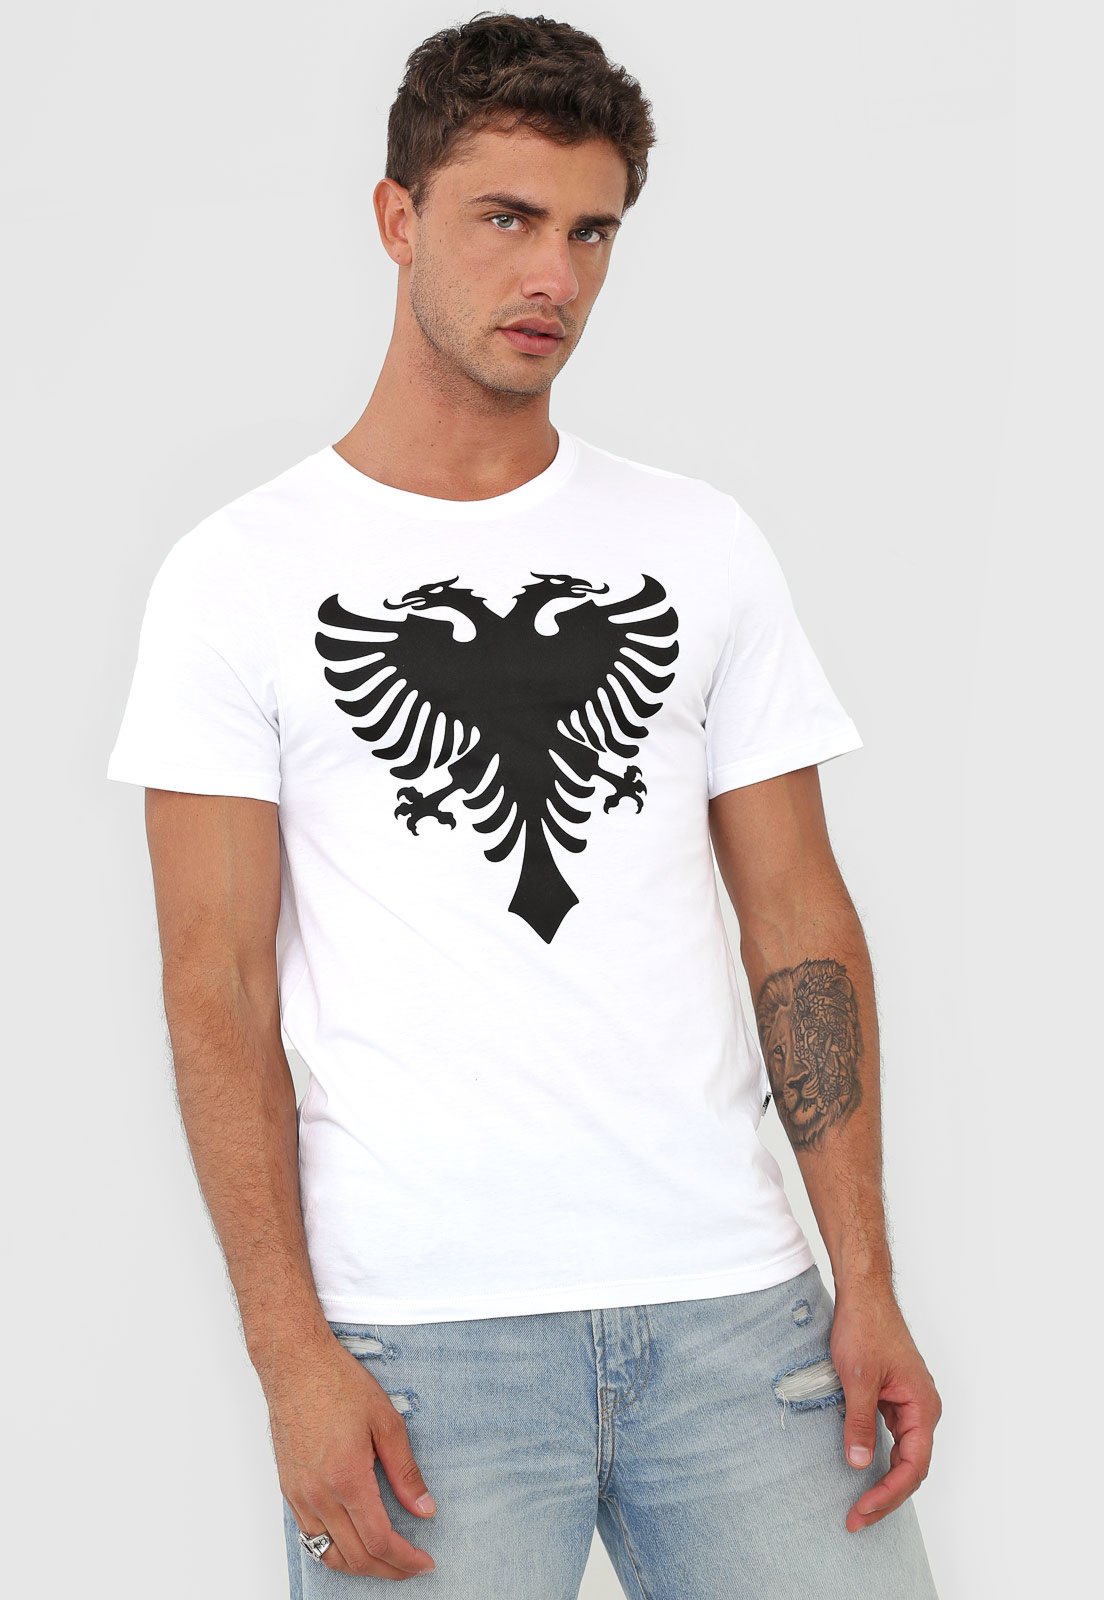 Camiseta Cavalera Logo Branca - Compre Agora